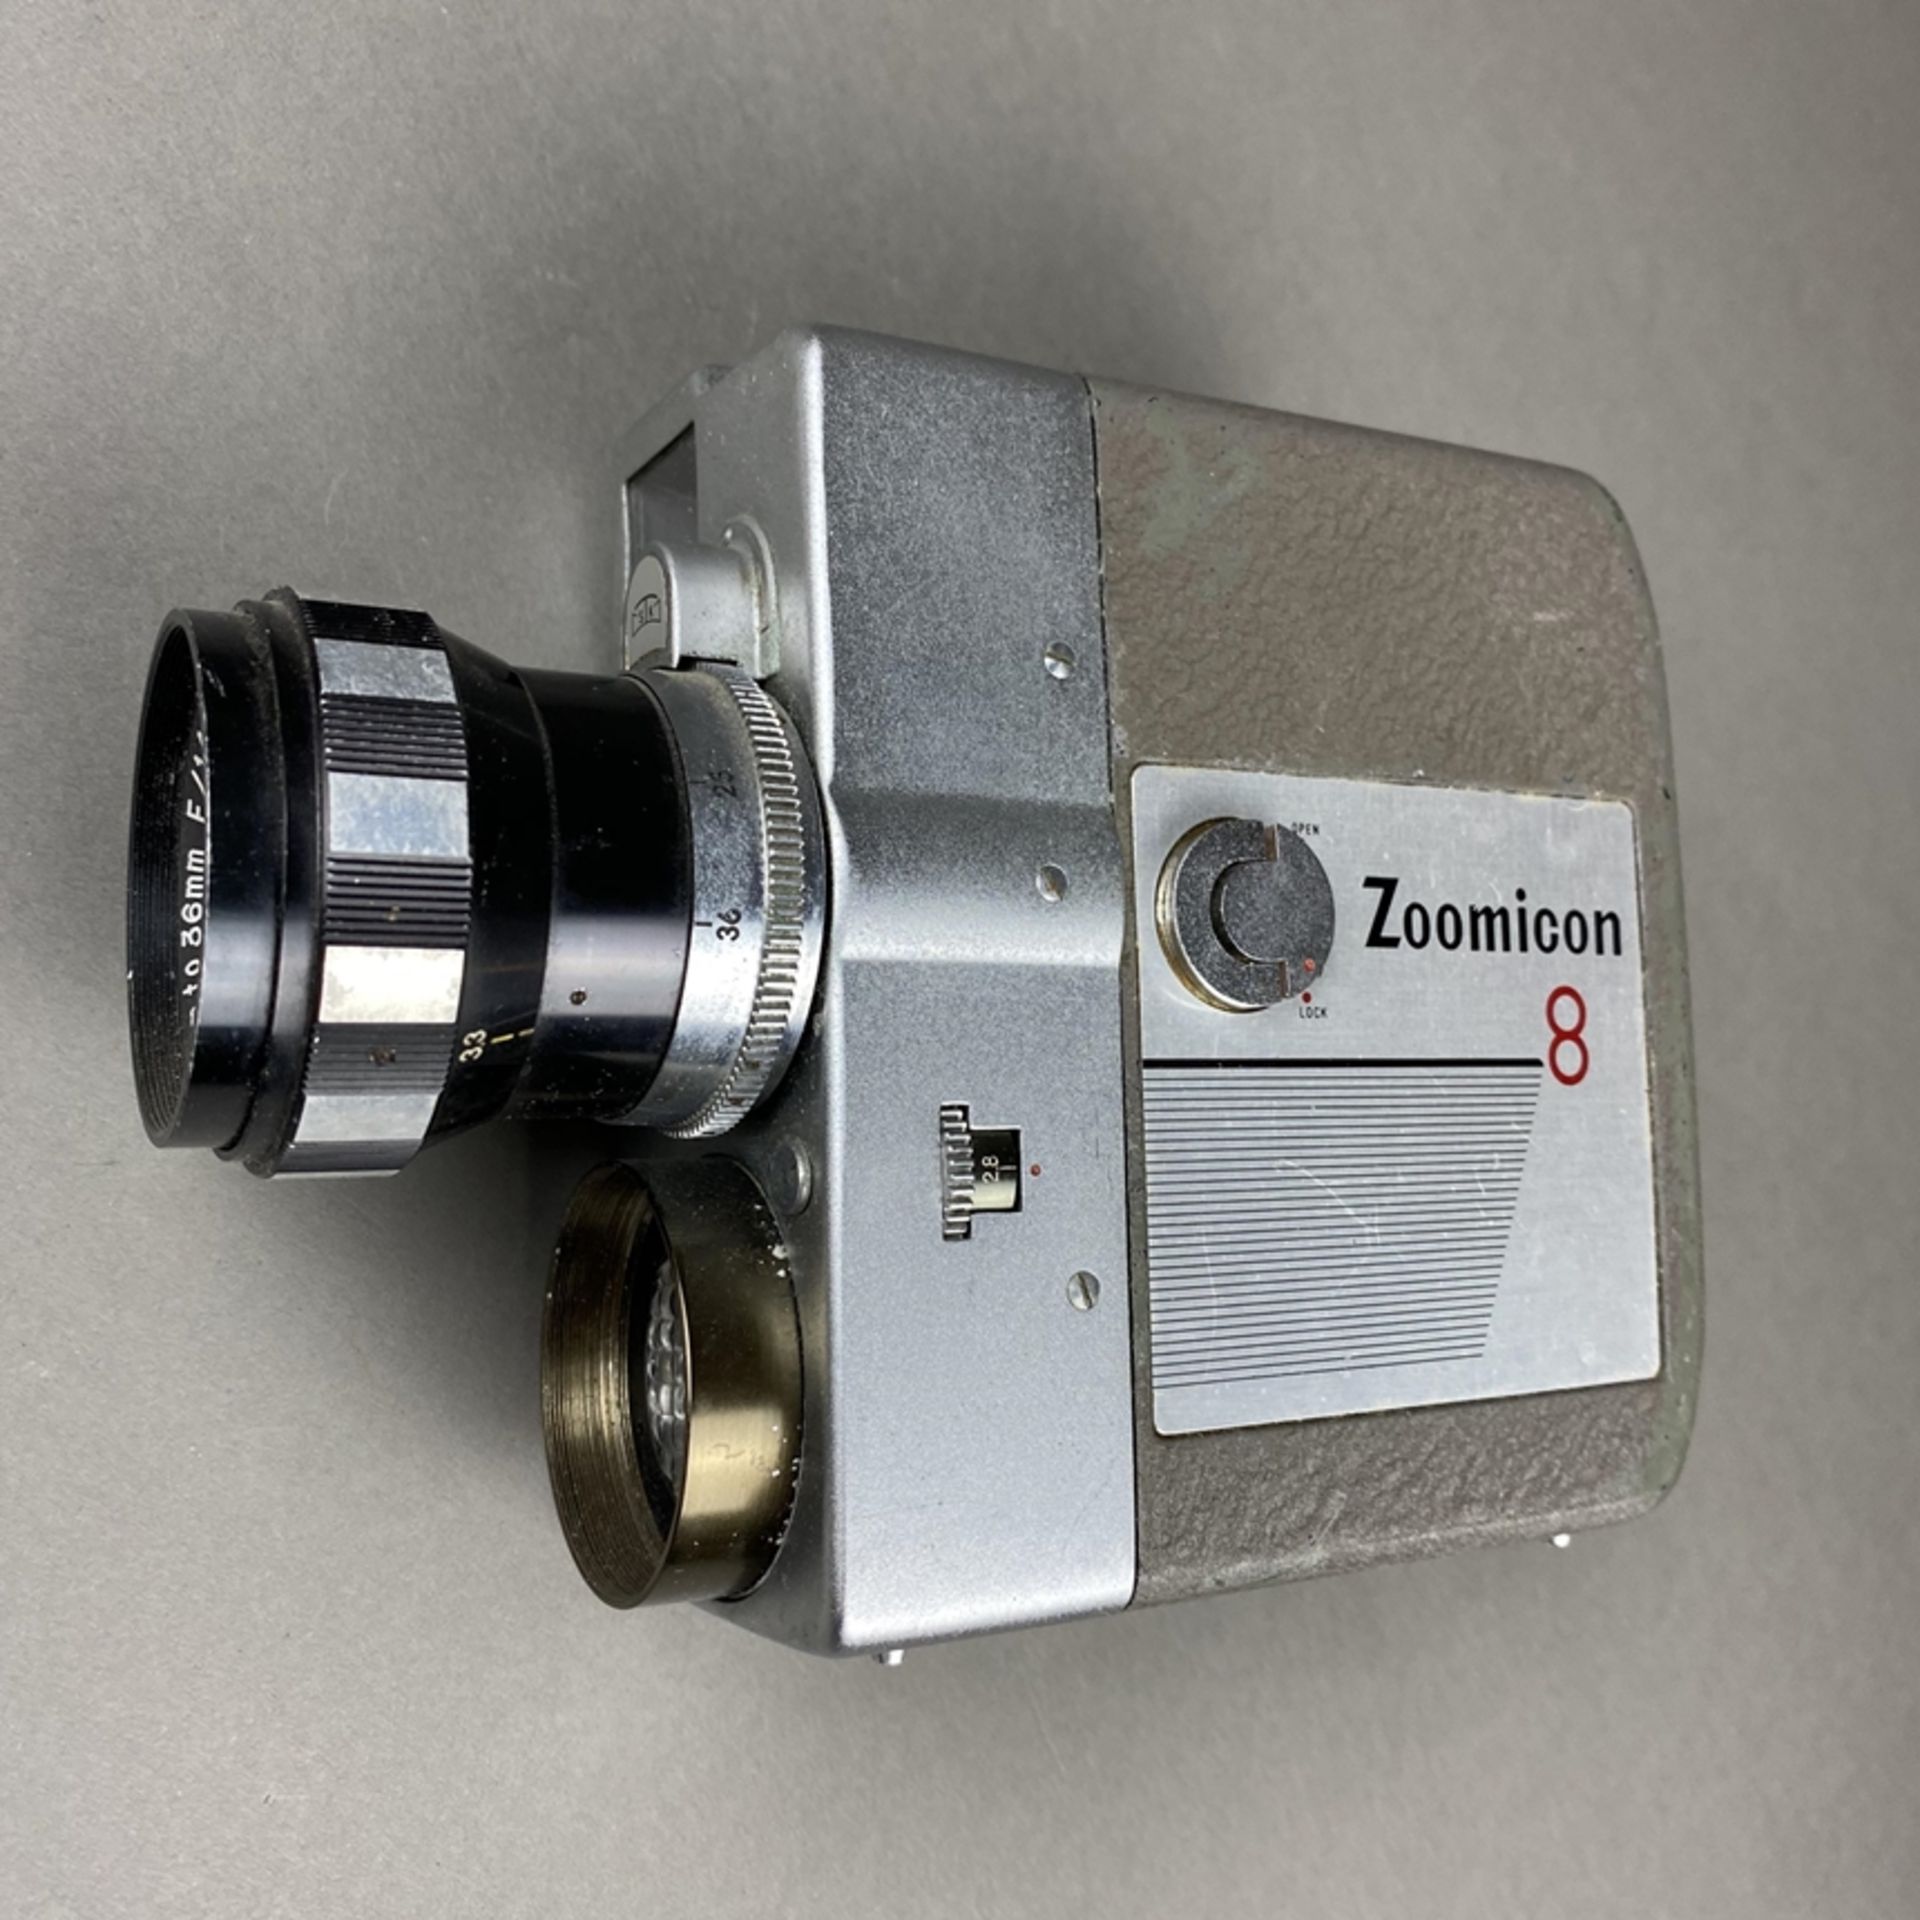 Vintage Filmkamera Zoomicon 8 - STK, Japan, Metallgehäuse, 1959/60, Objektiv Zoomicor / Zoom, f=9-